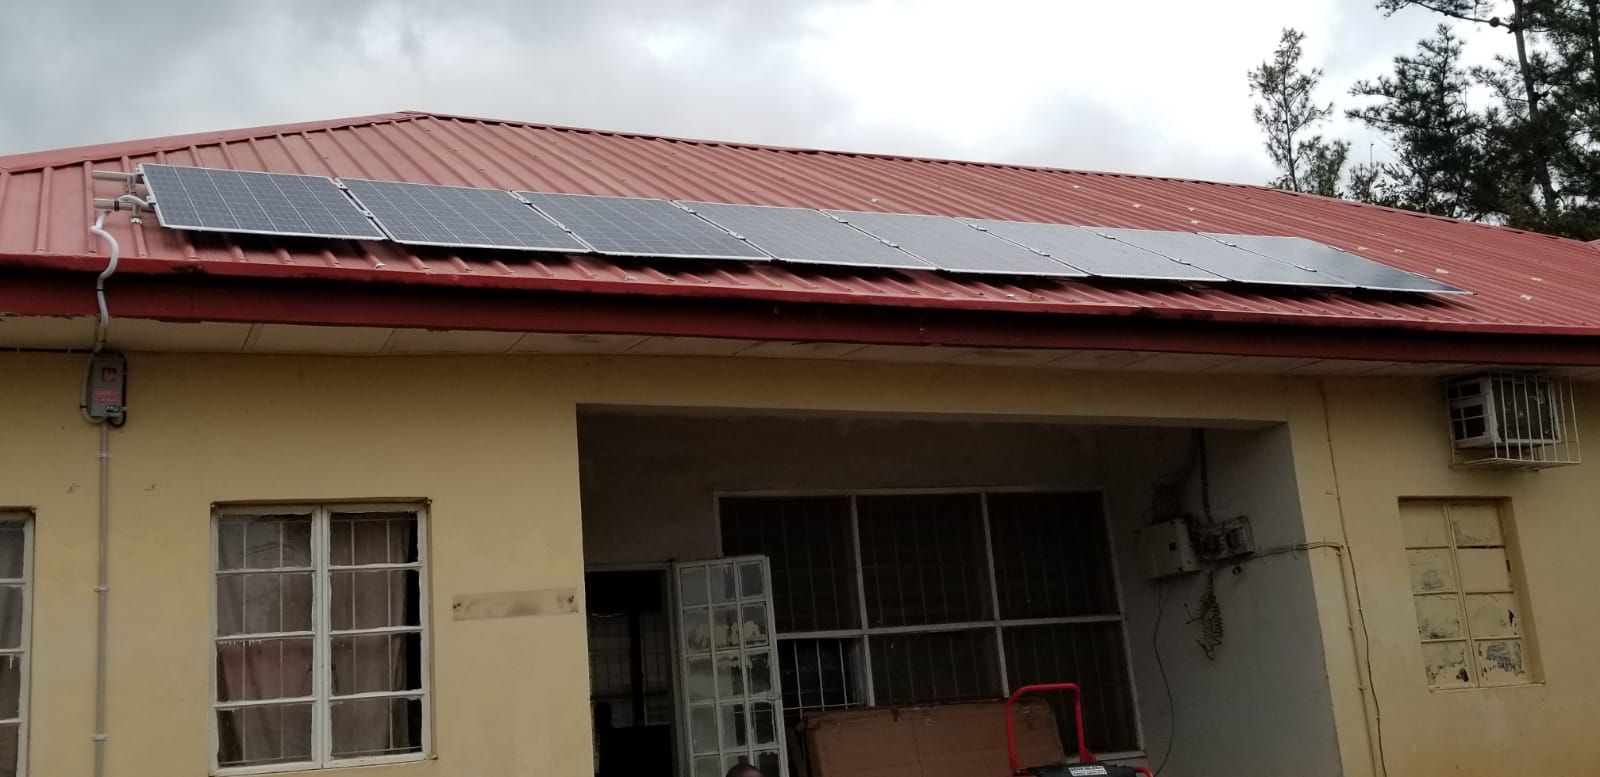 Almaden glass solar panels